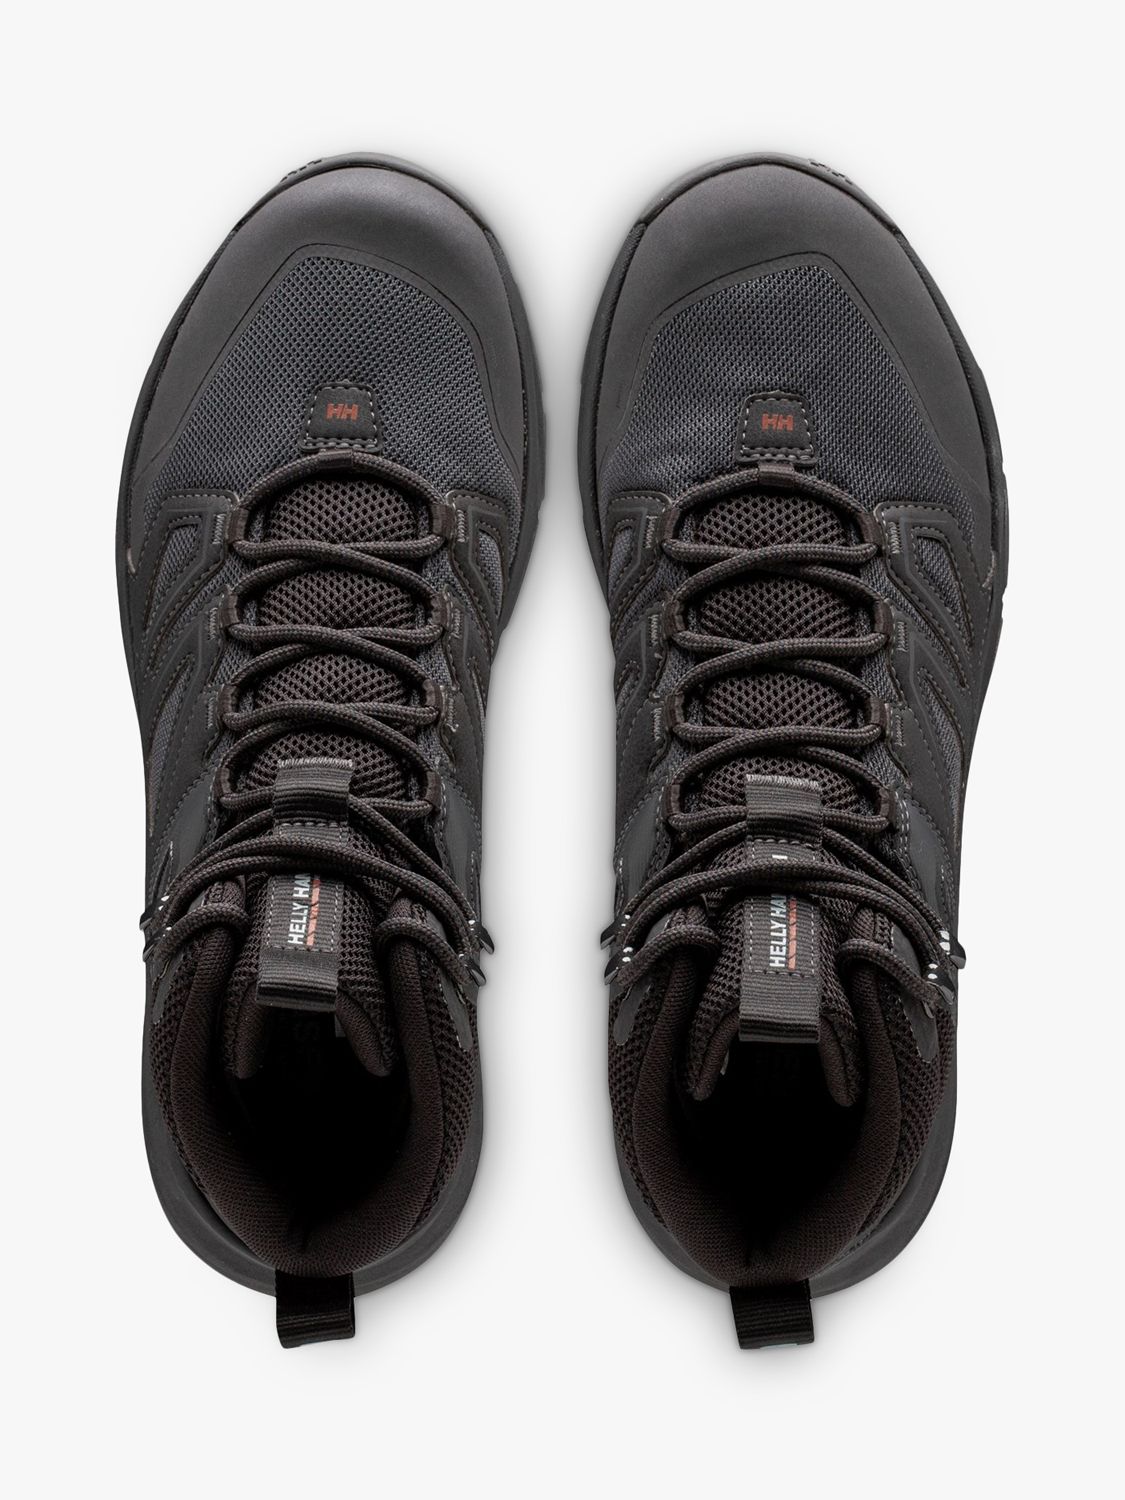 Buy Helly Hansen Stalheim Hiking Boots, Black Online at johnlewis.com